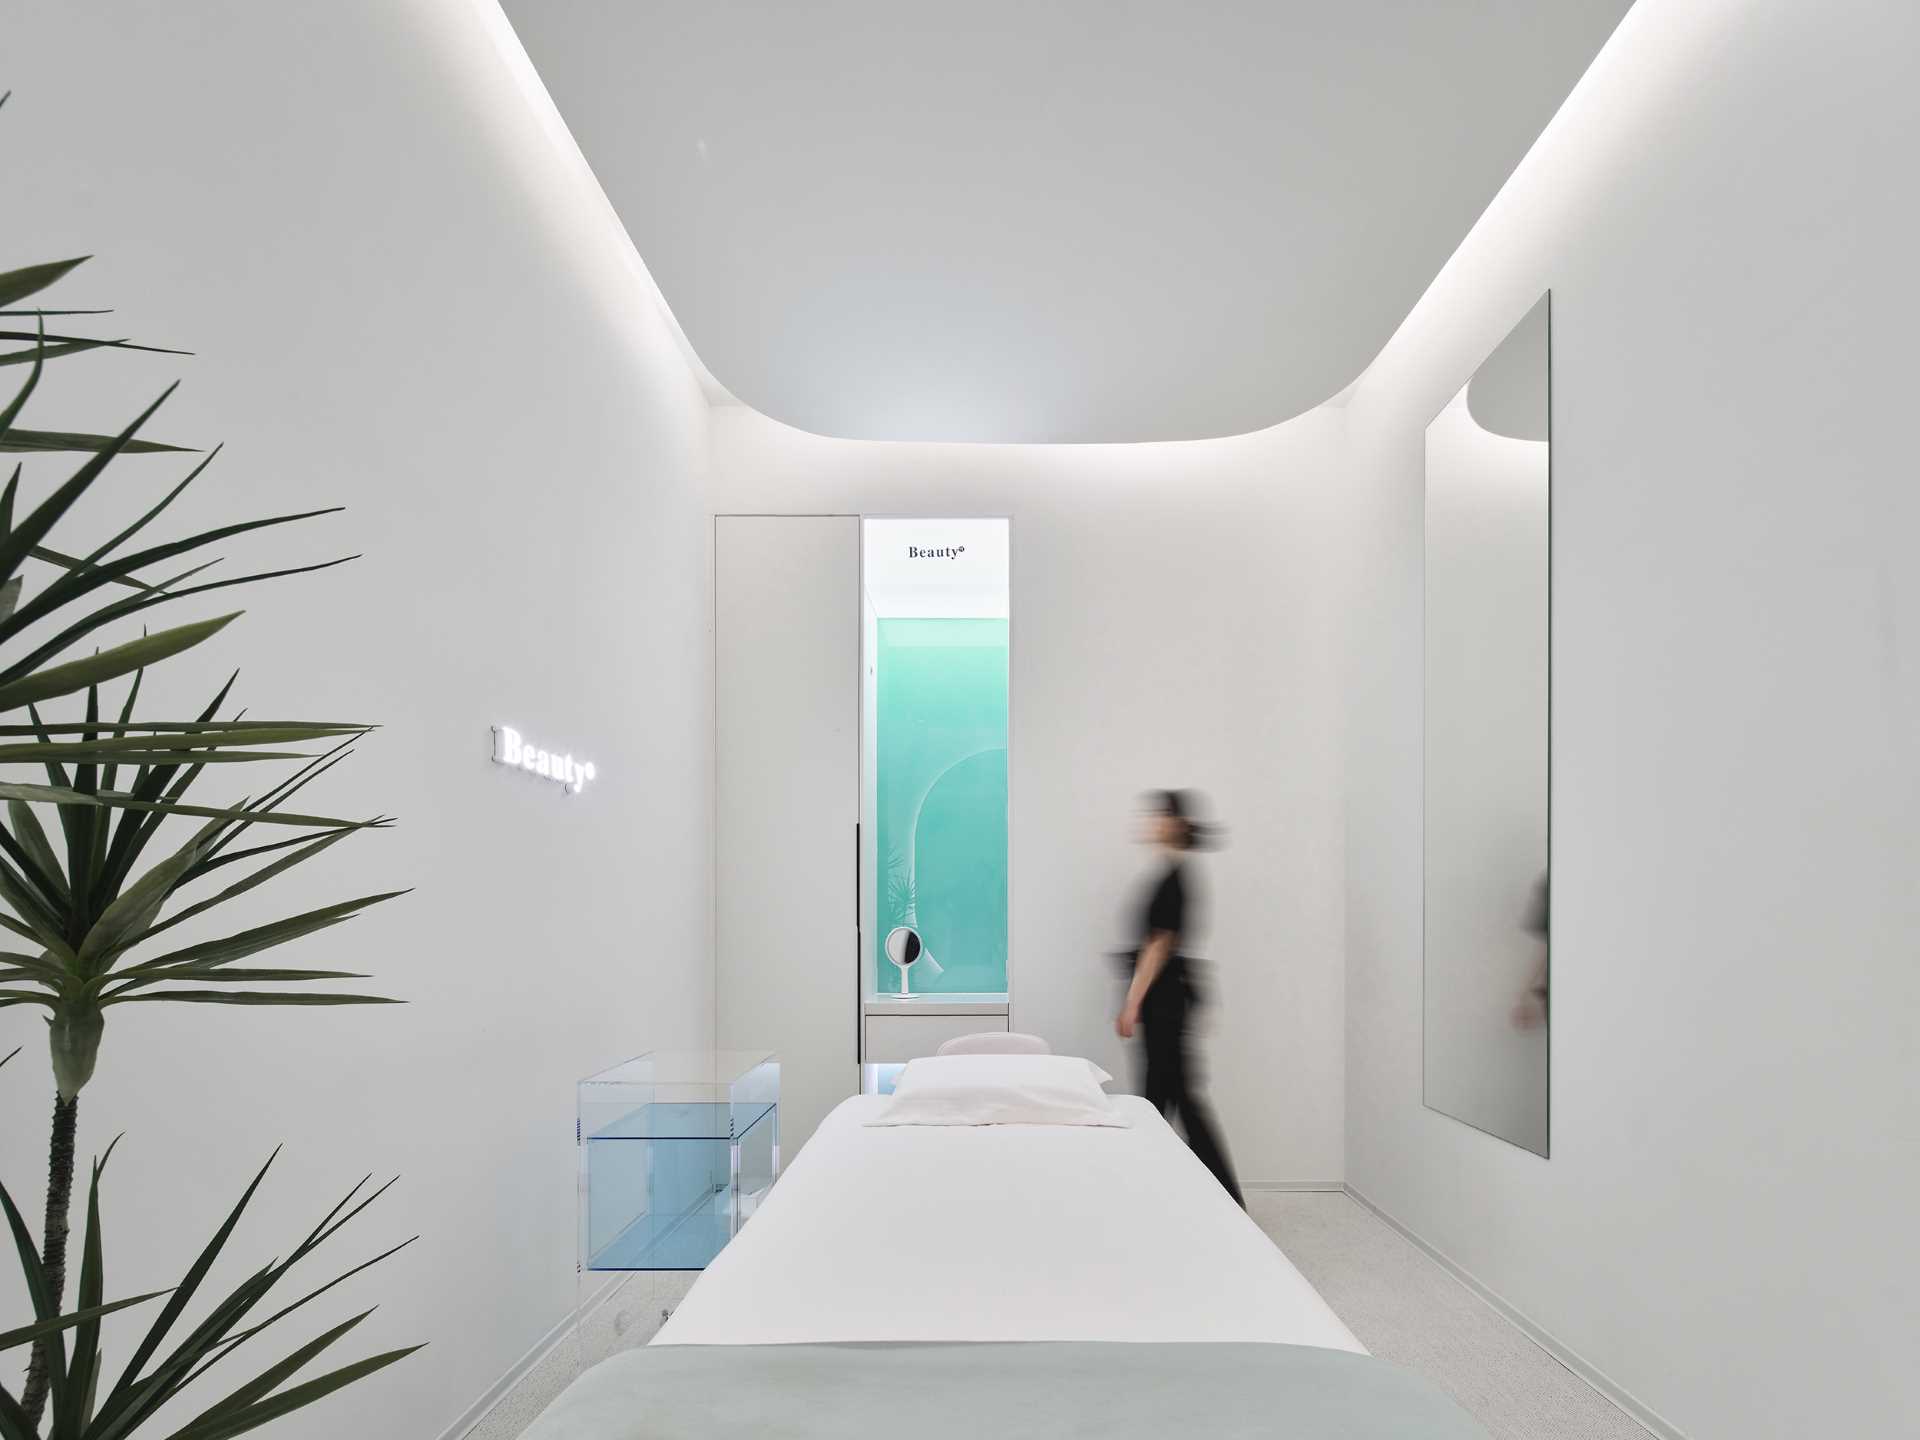 اتاق درمان تک نفره دارای یک طرح مستطیل شکل با جزئیات سقف گرد برای نرم ، گوشه ها است.  یک آینه بزرگ باعث می شود فضا بزرگتر به نظر برسد، در حالی که دیوار مقابل دارای لهجه شیشه ای شیب دار آبی-سبز است.